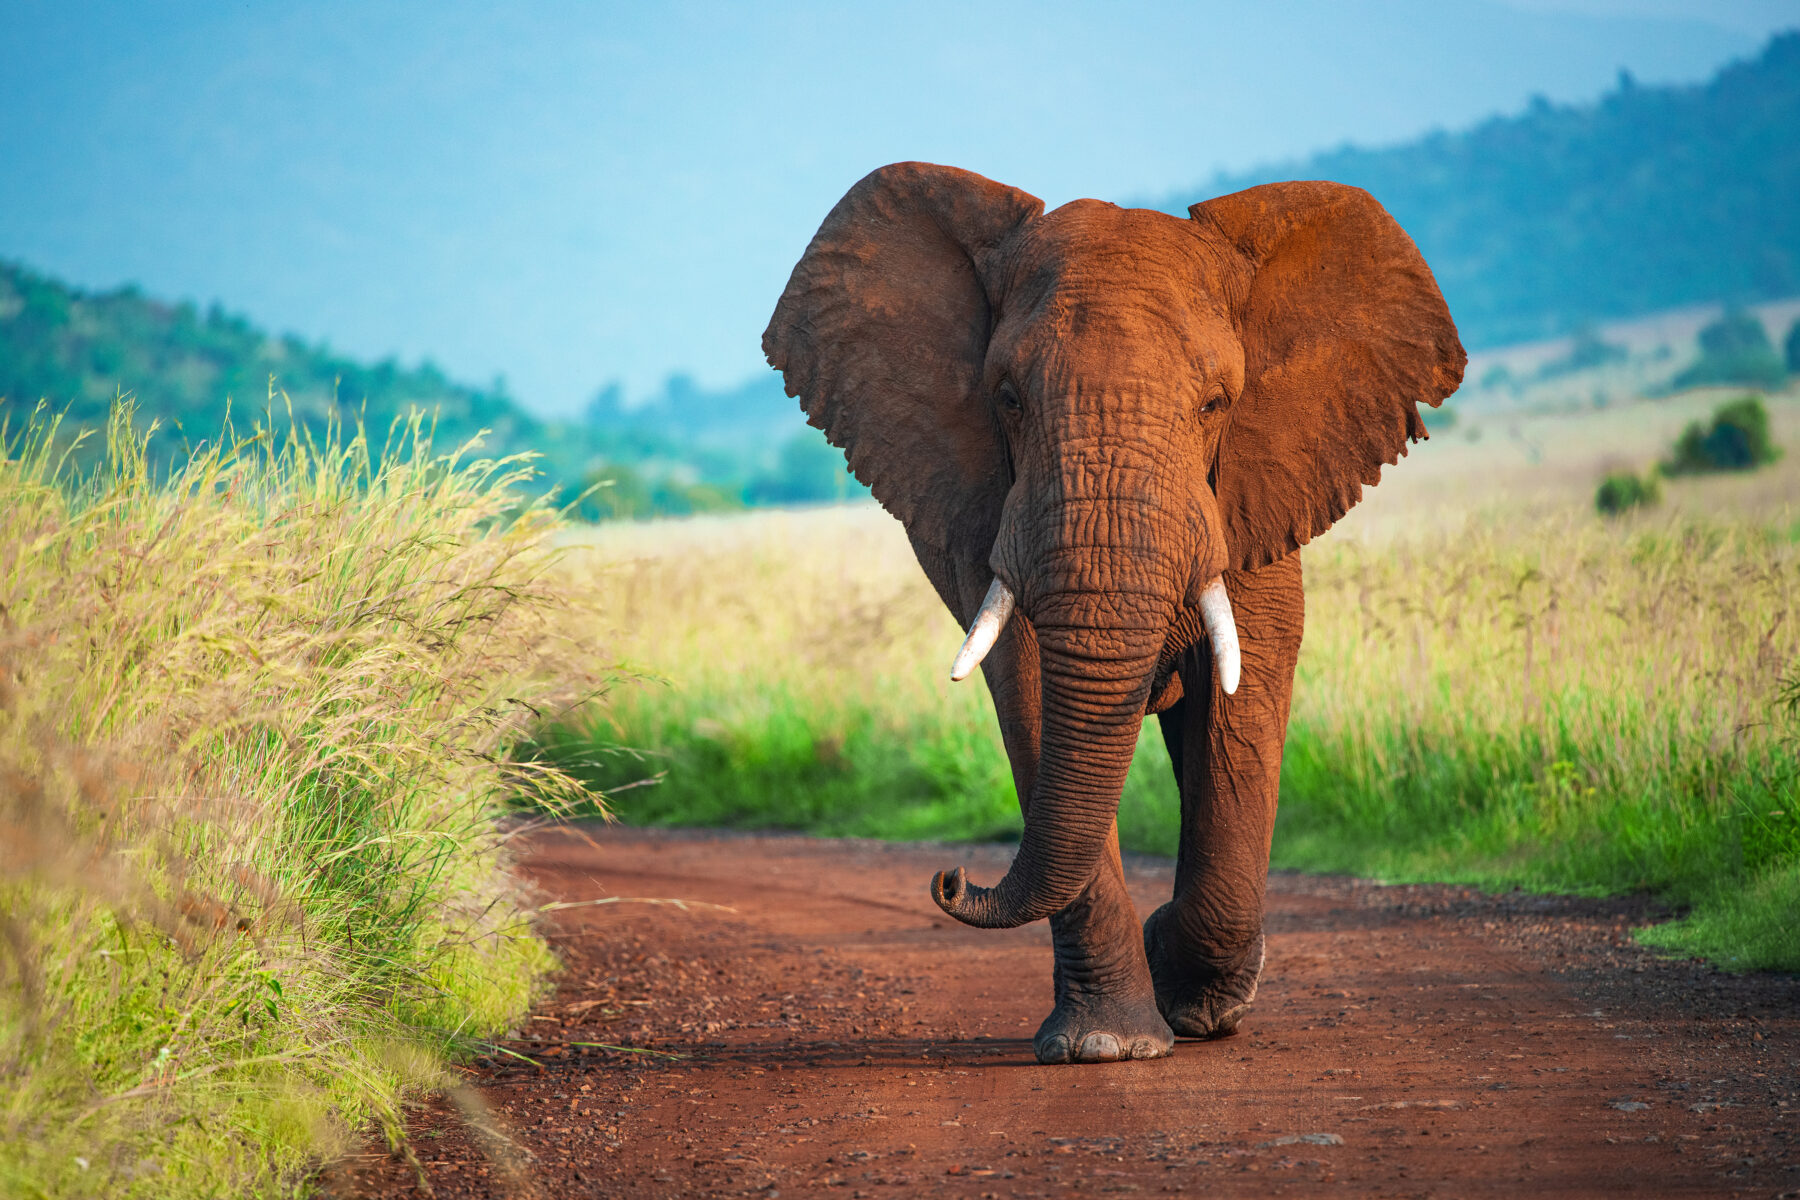 An African elephant walking along a dirt track